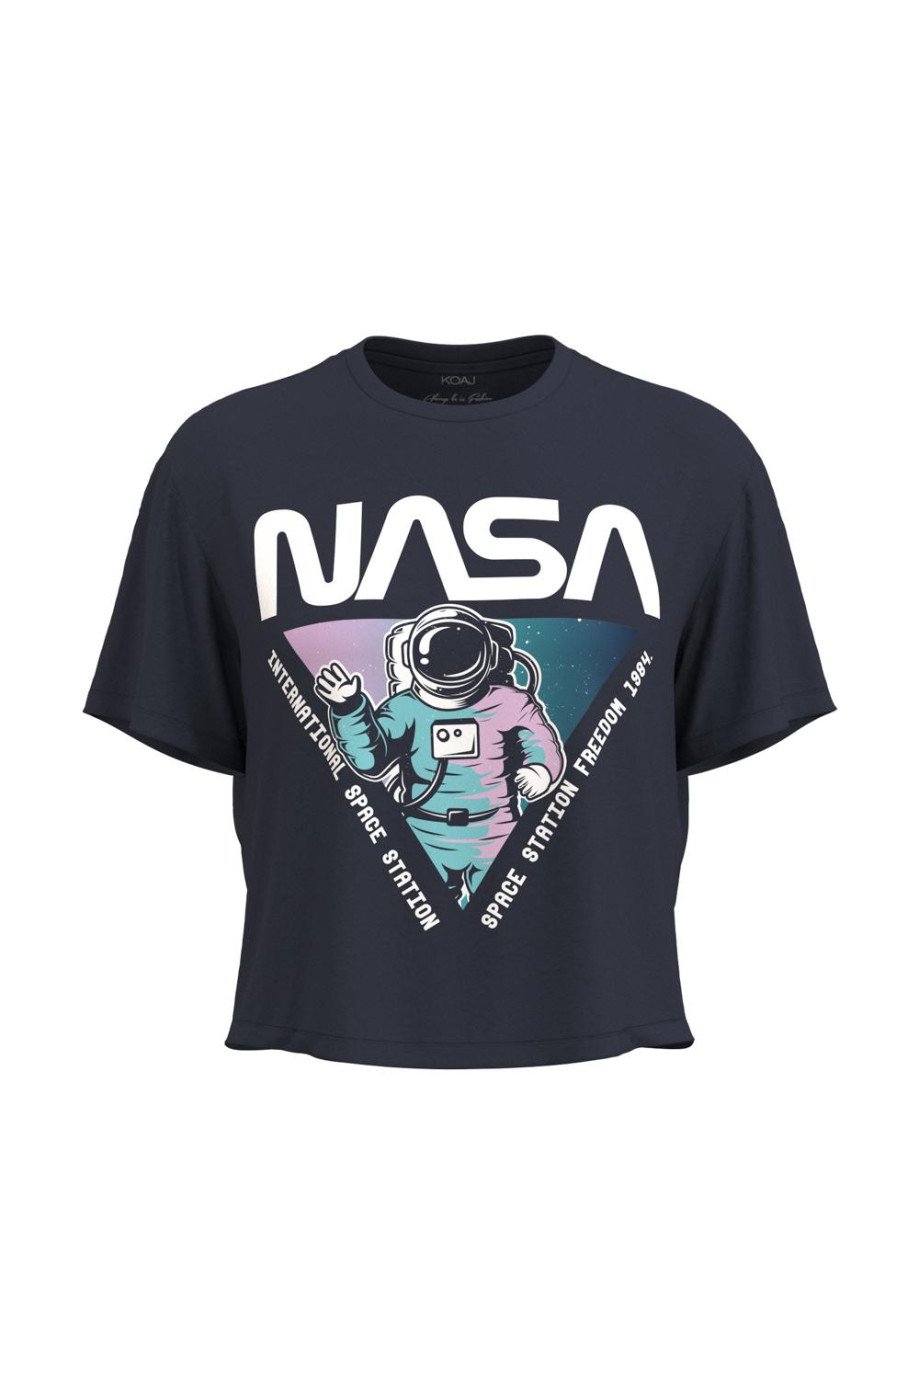 Camiseta crop top unicolor con diseño de NASA en frente